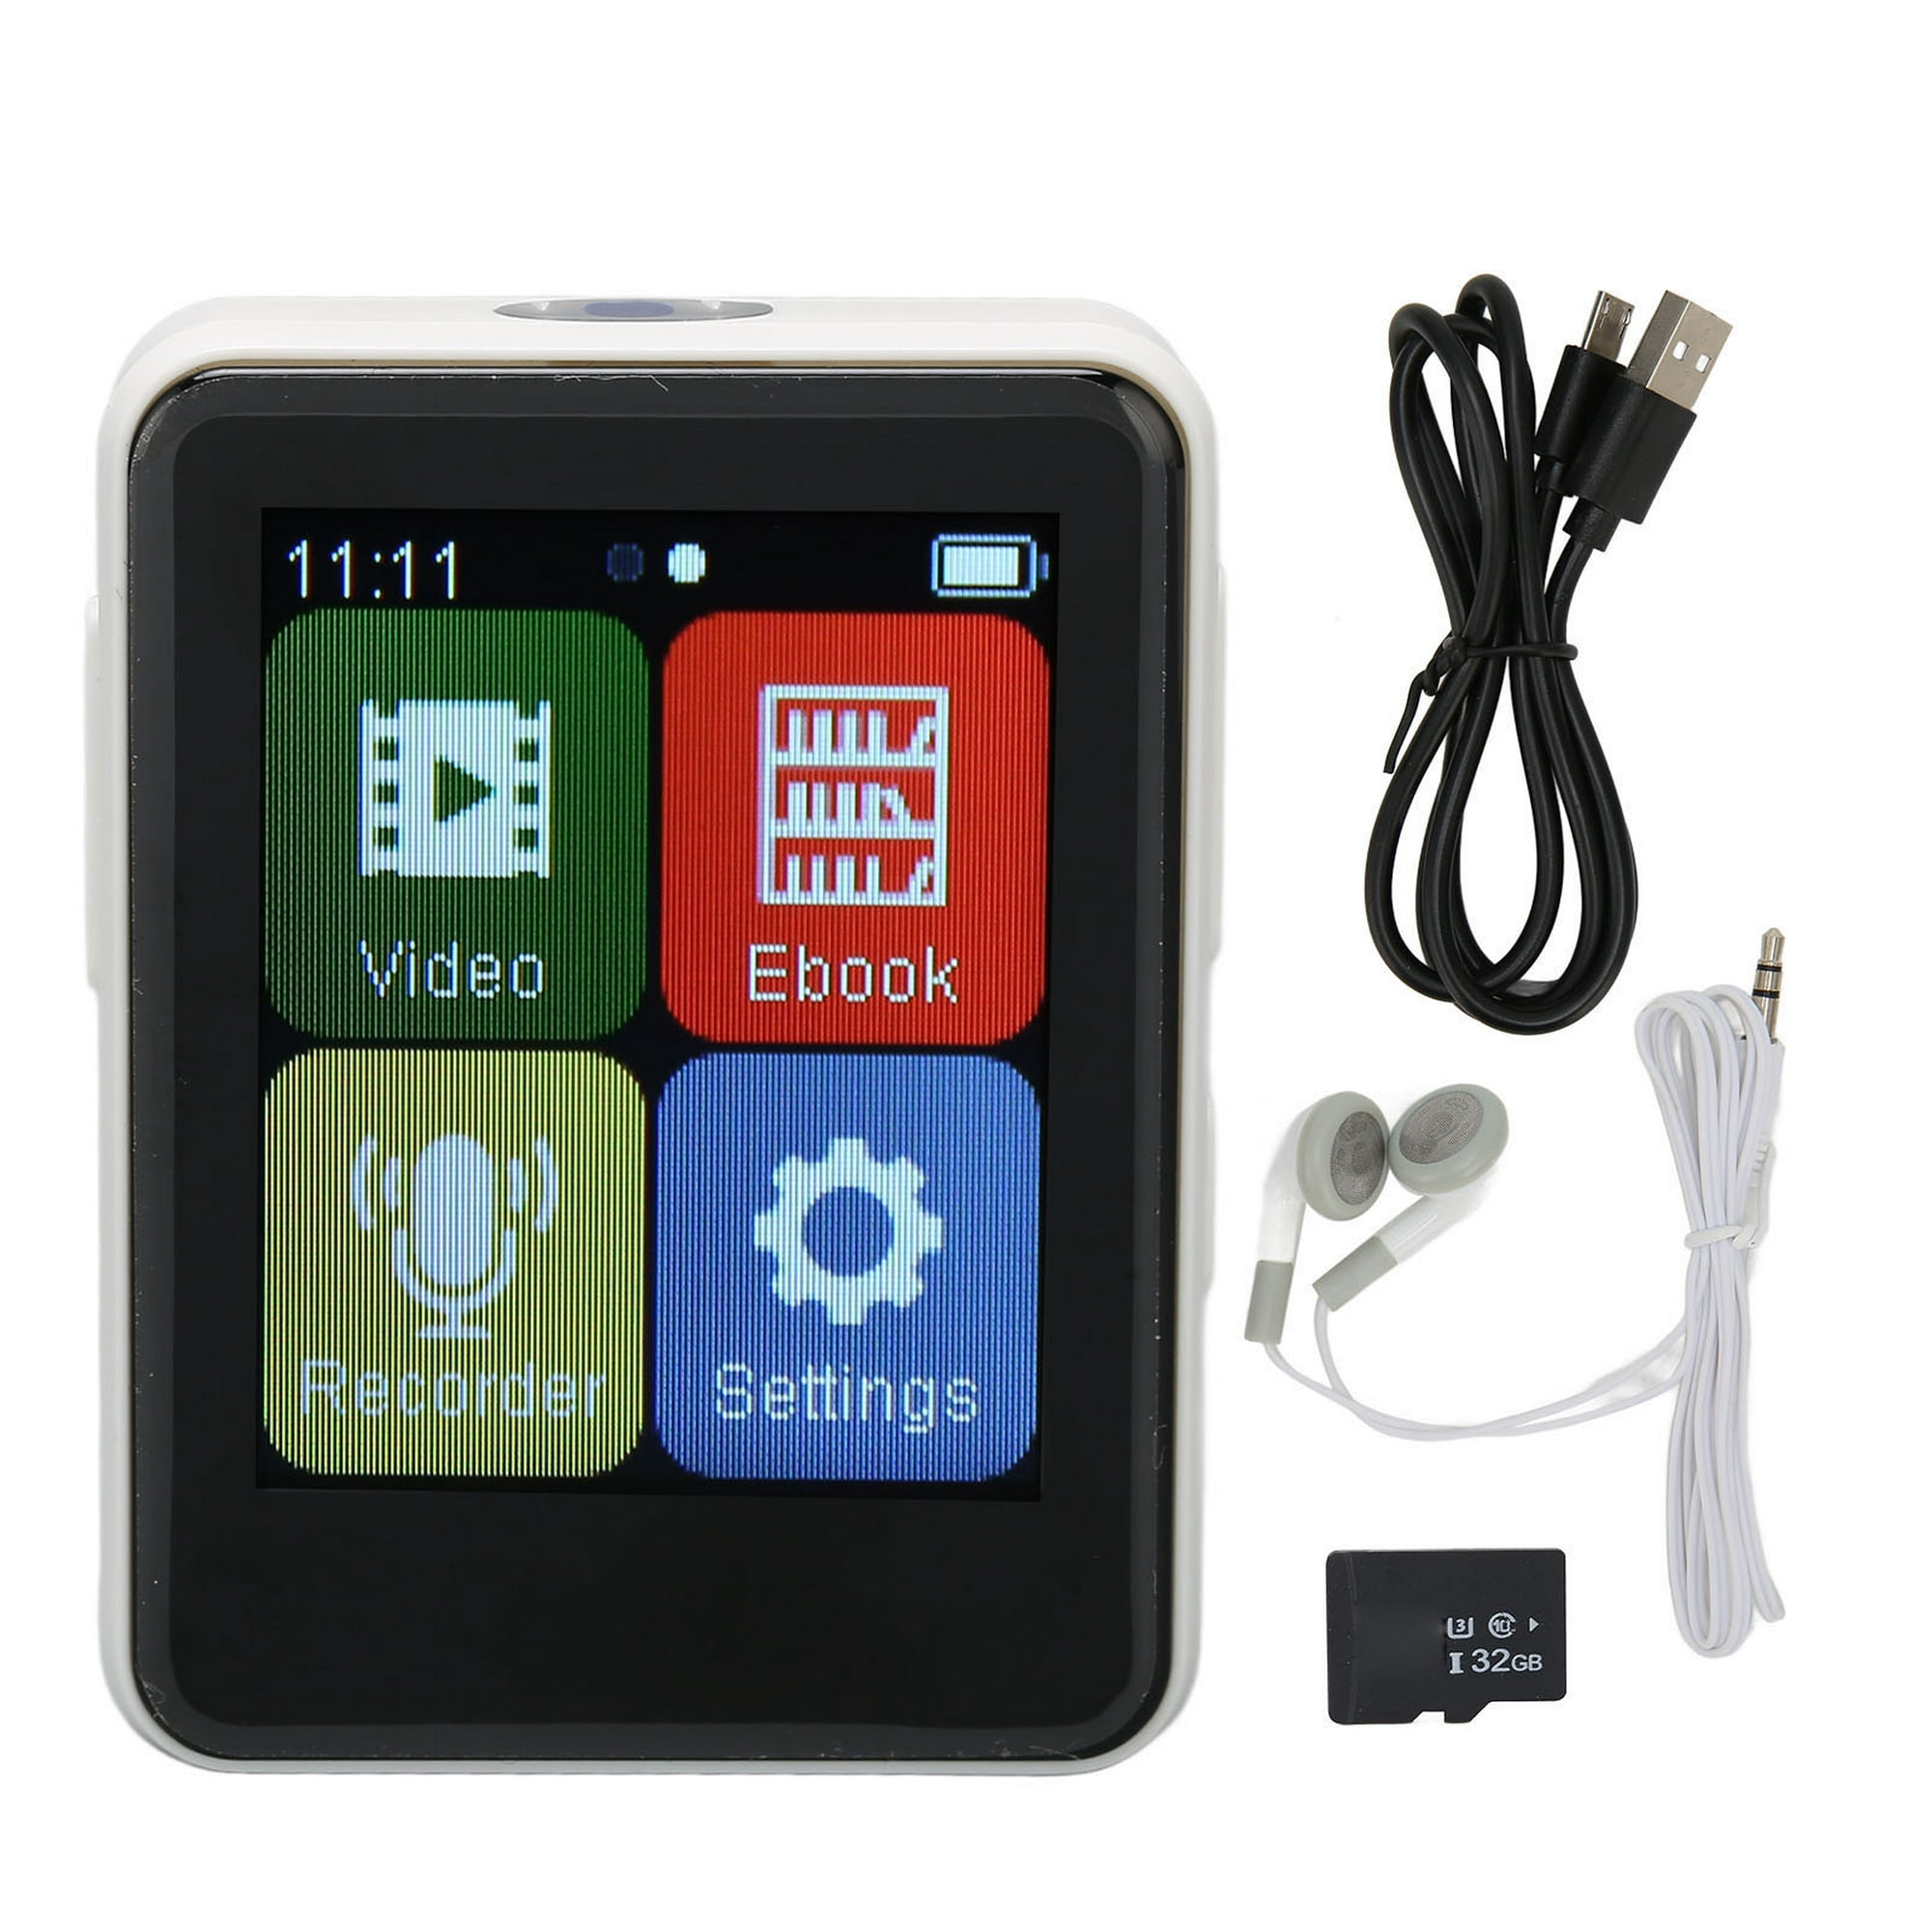 Reproductor M con pantalla táctil, reproductor MP3 Bluetooth 4.0 Reproductor  M de alta resolución Va VoborMX